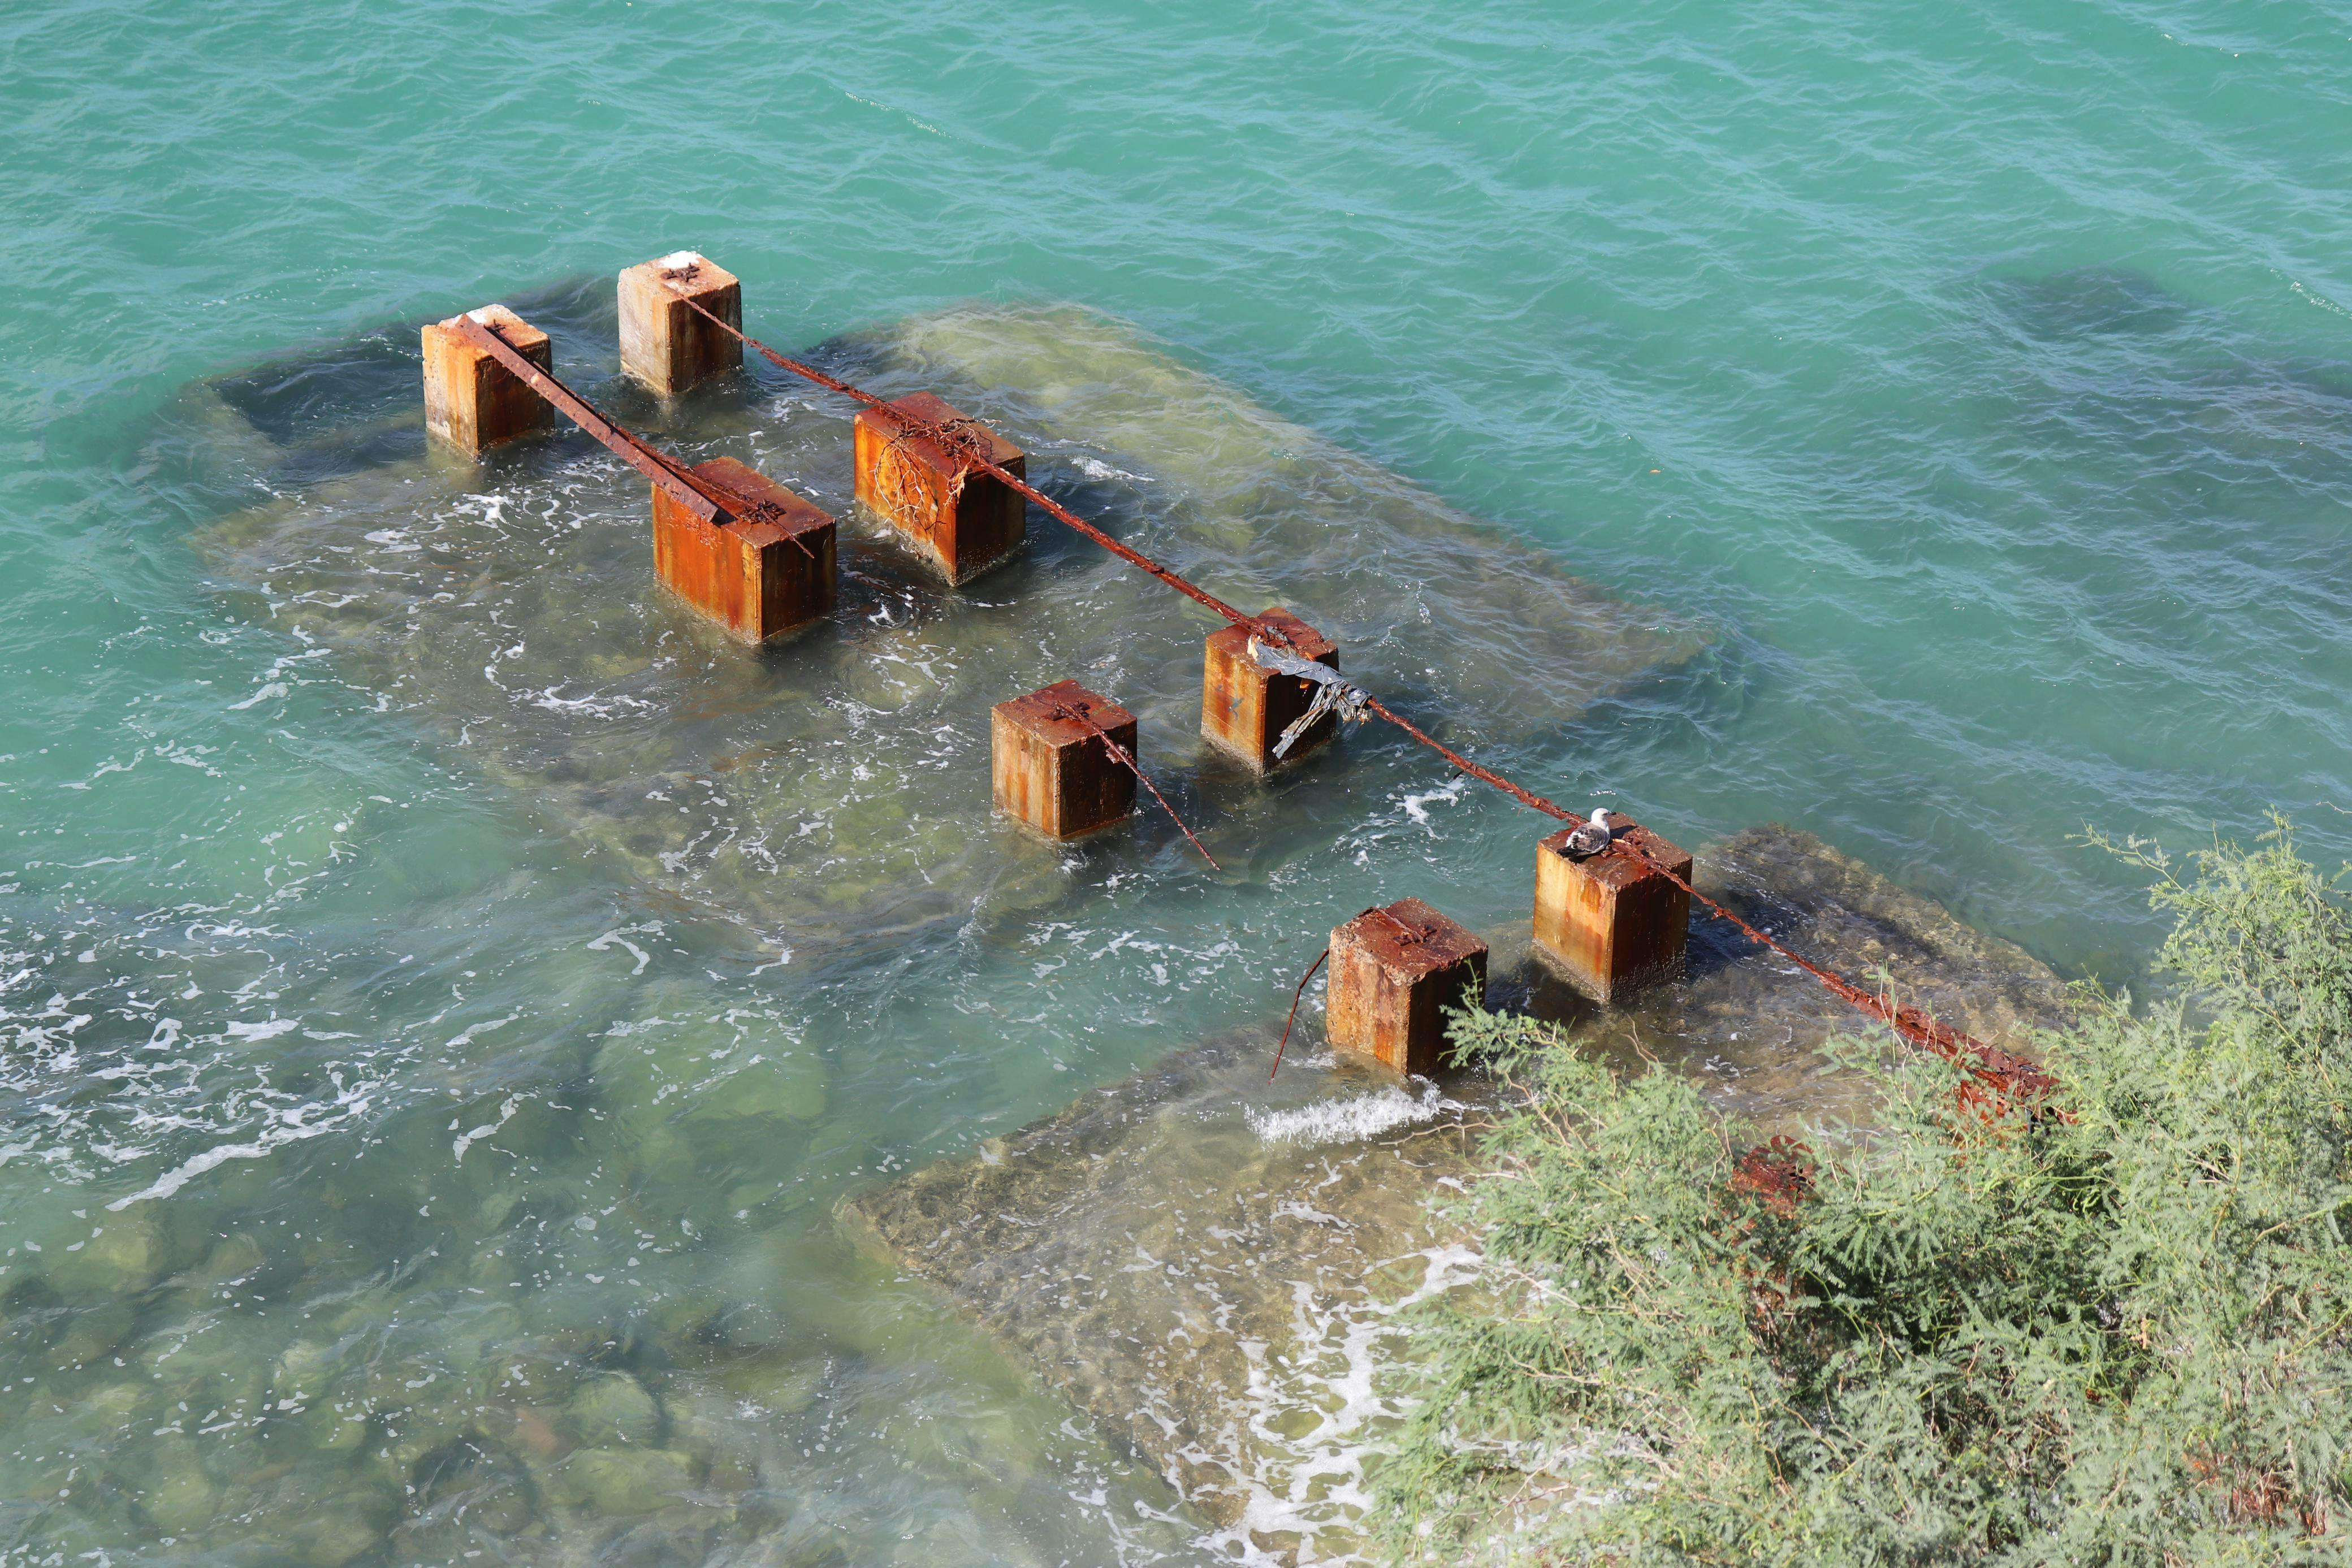 Si bien los toboganes fueron desmantelados y retirados de El Coromuel, la base de los mismos aún se encuentran en la playa, se observan oxidados y representan un peligro para quienes asisten a realizar actividades acuáticas.